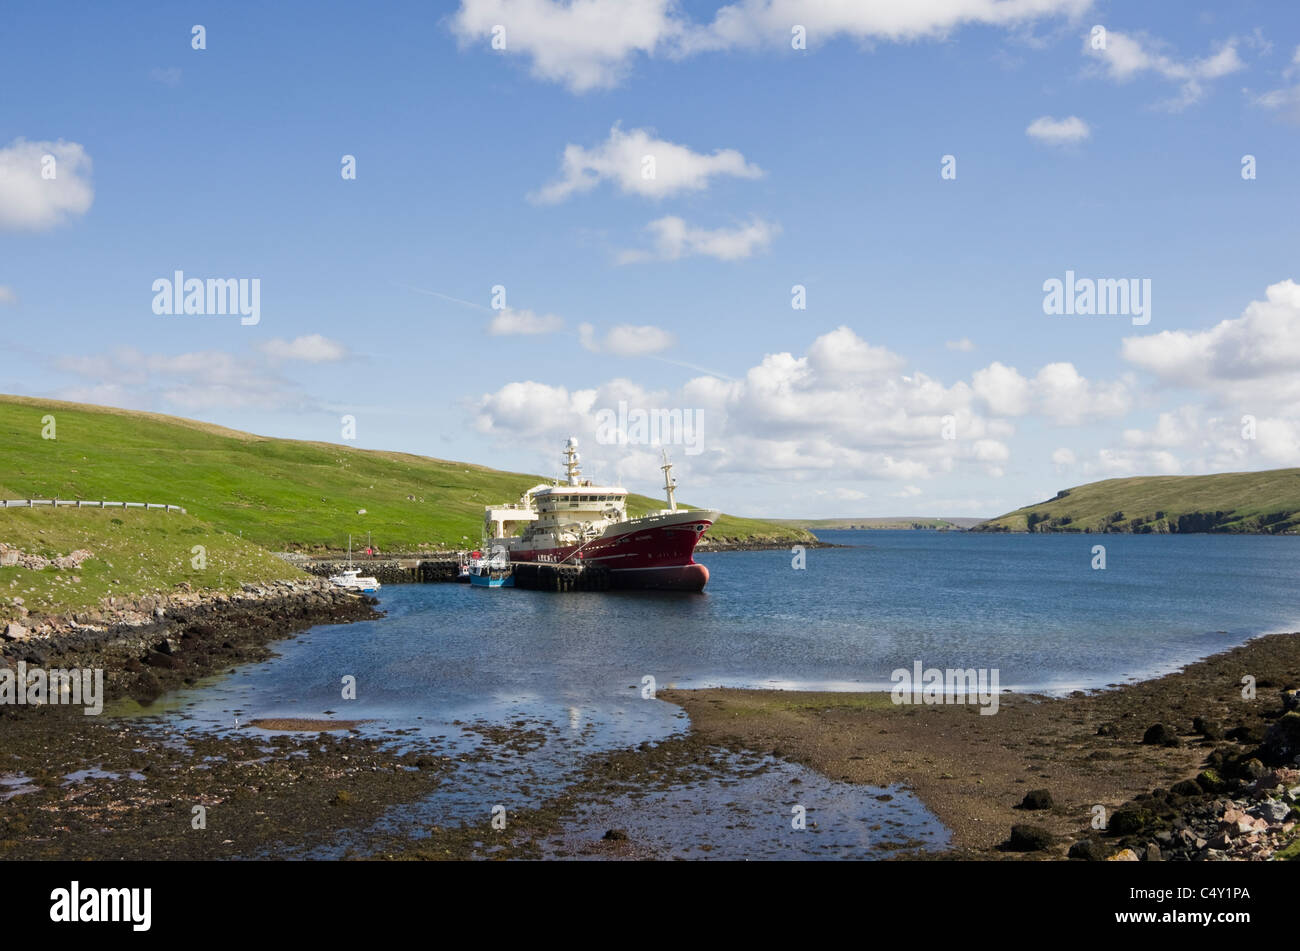 Collafirth, Northmavine, Shetland, Scotland, UK, Grande-Bretagne. Bateau de pêche bateau amarré dans le port d'Altaire Yell Sound Banque D'Images